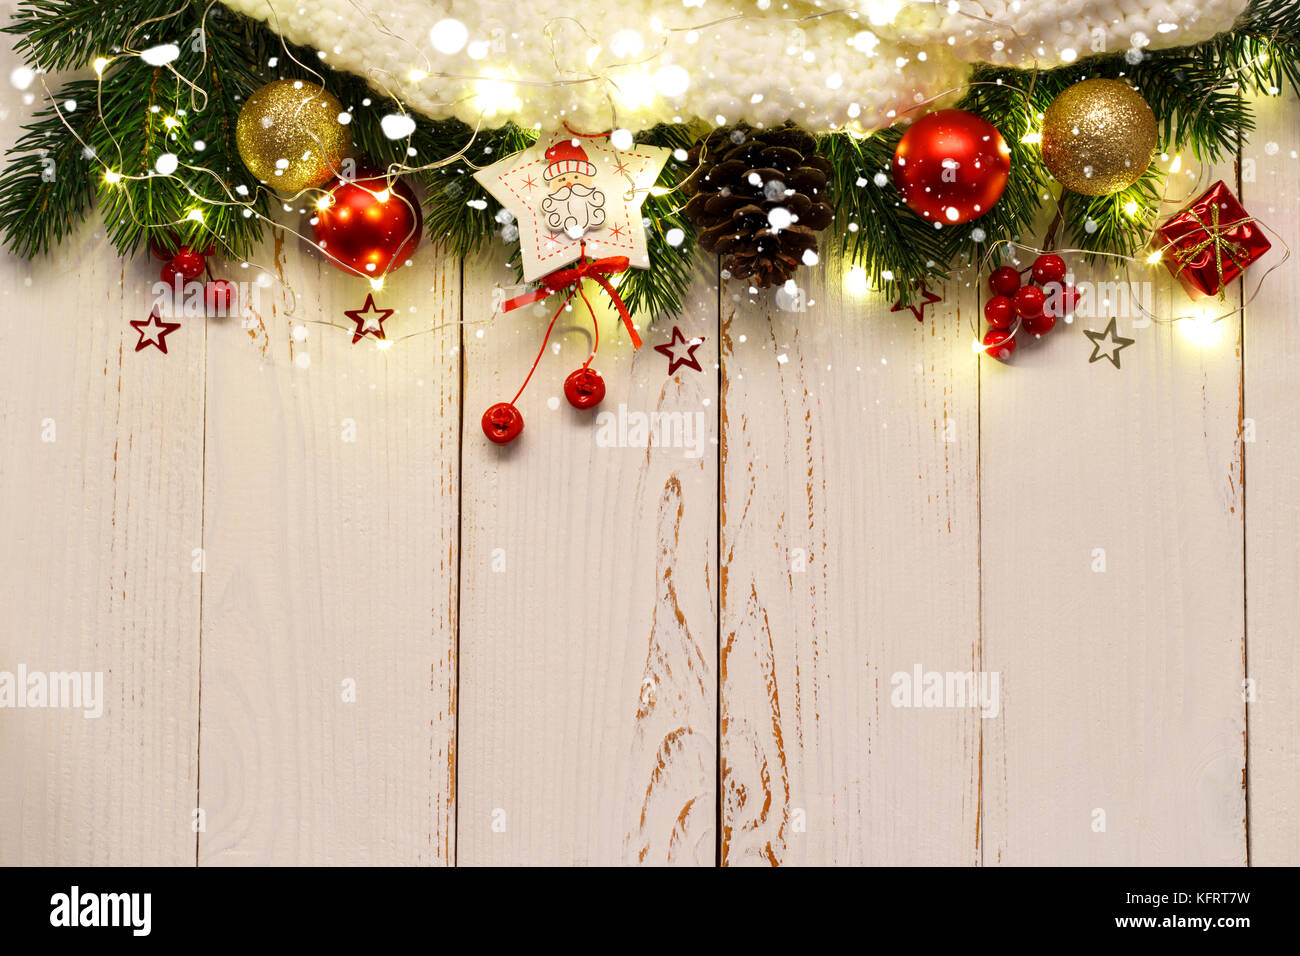 Weihnachten oder Neujahr Hintergrund mit festlichen Dekorationen und Lichter auf weiße Holztisch, lfat lag über dem Kopf anzeigen Stockfoto